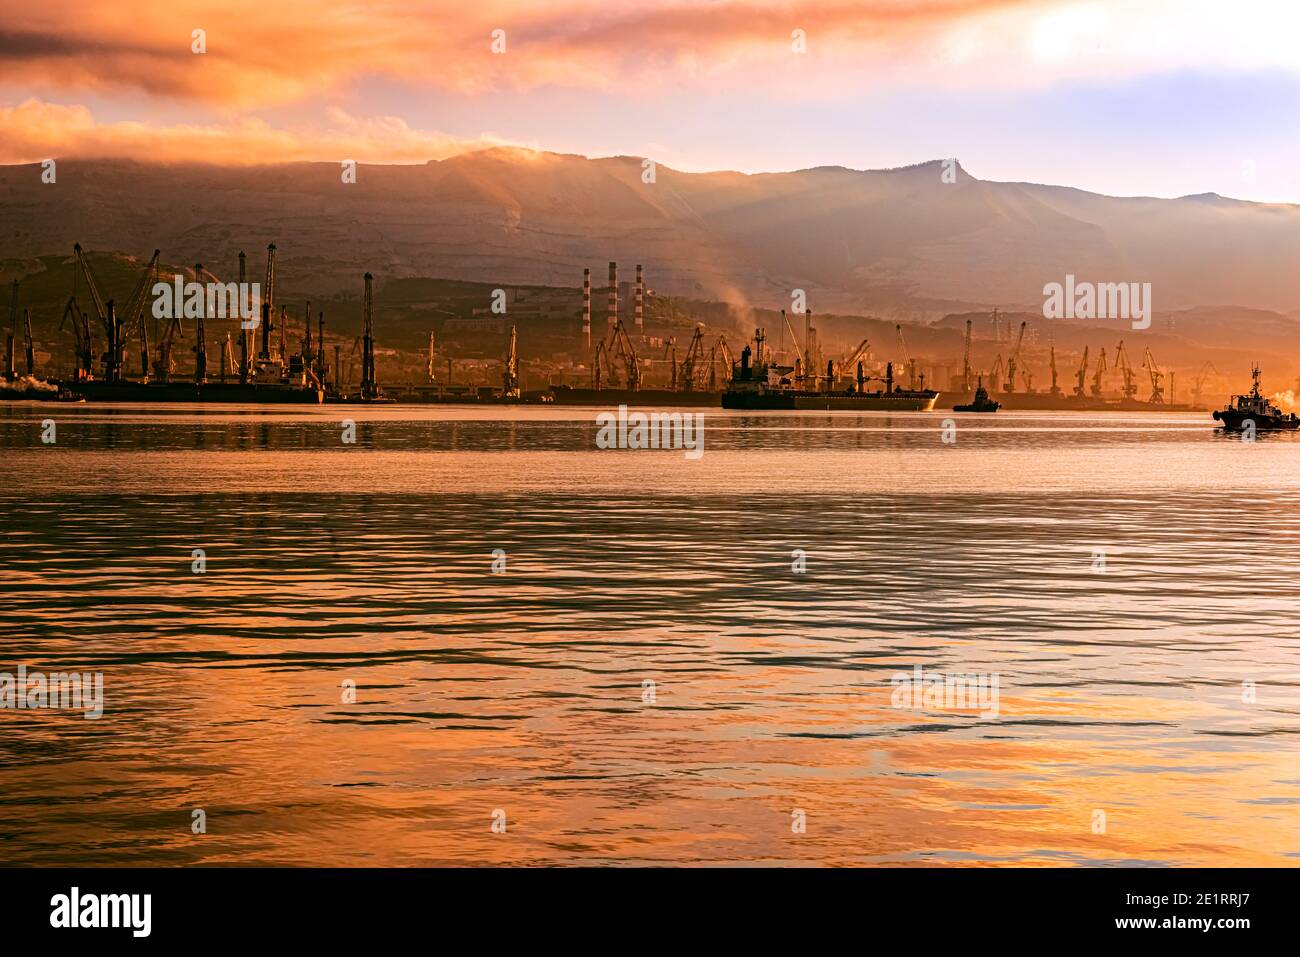 vista de las instalaciones portuarias y mecanismos del novorossiysk puerto marítimo comercial temprano por la mañana Foto de stock